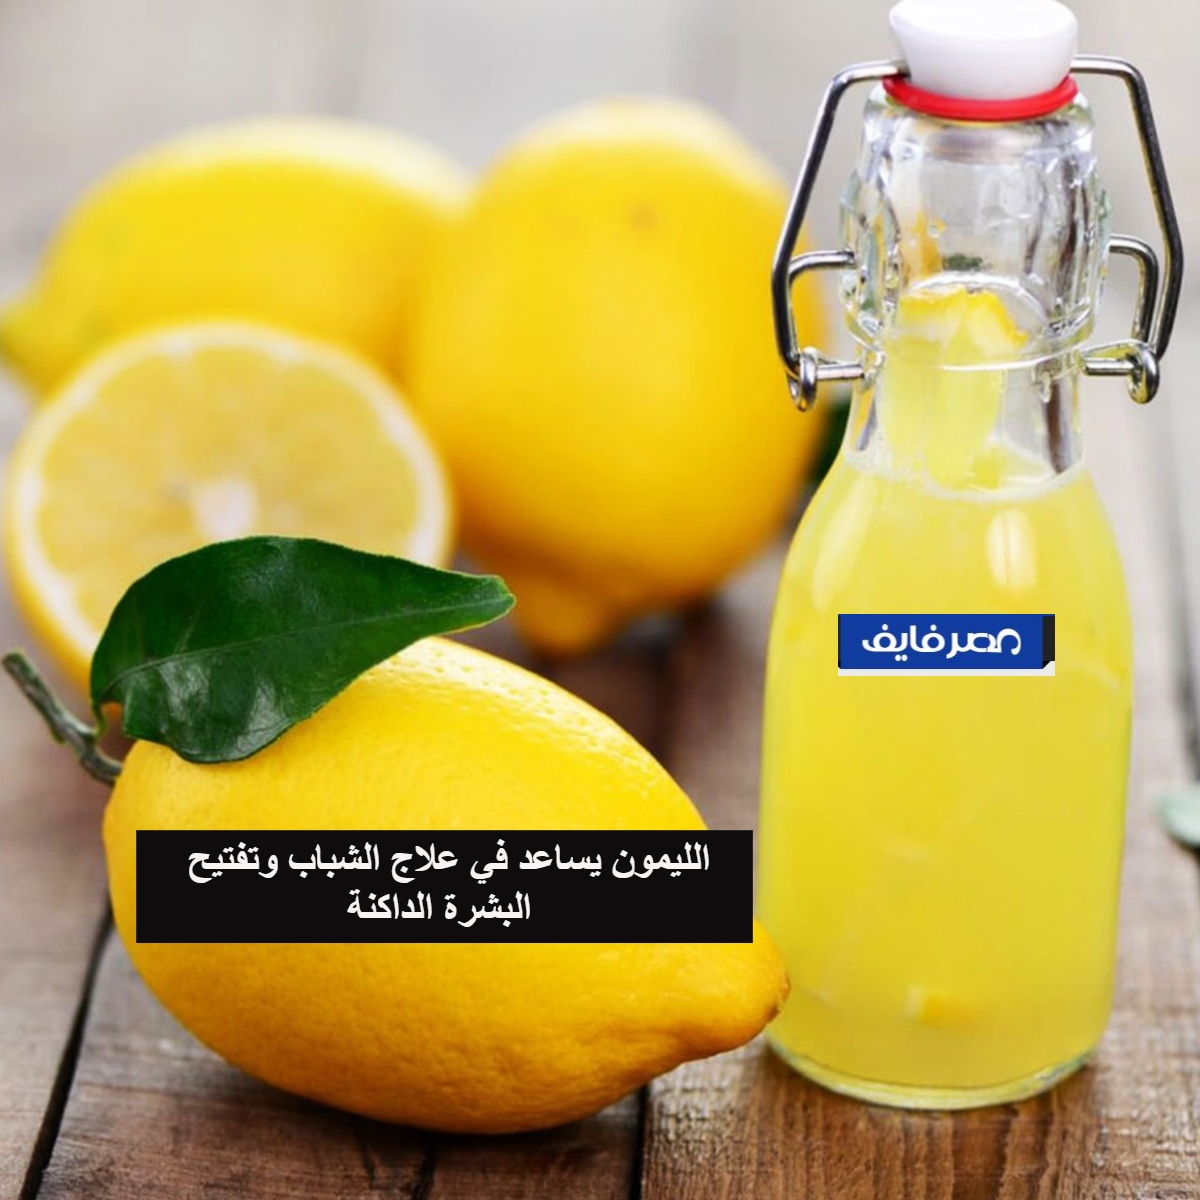 الليمون يساعد في علاج الشباب وتفتيح البشرة الداكنة 